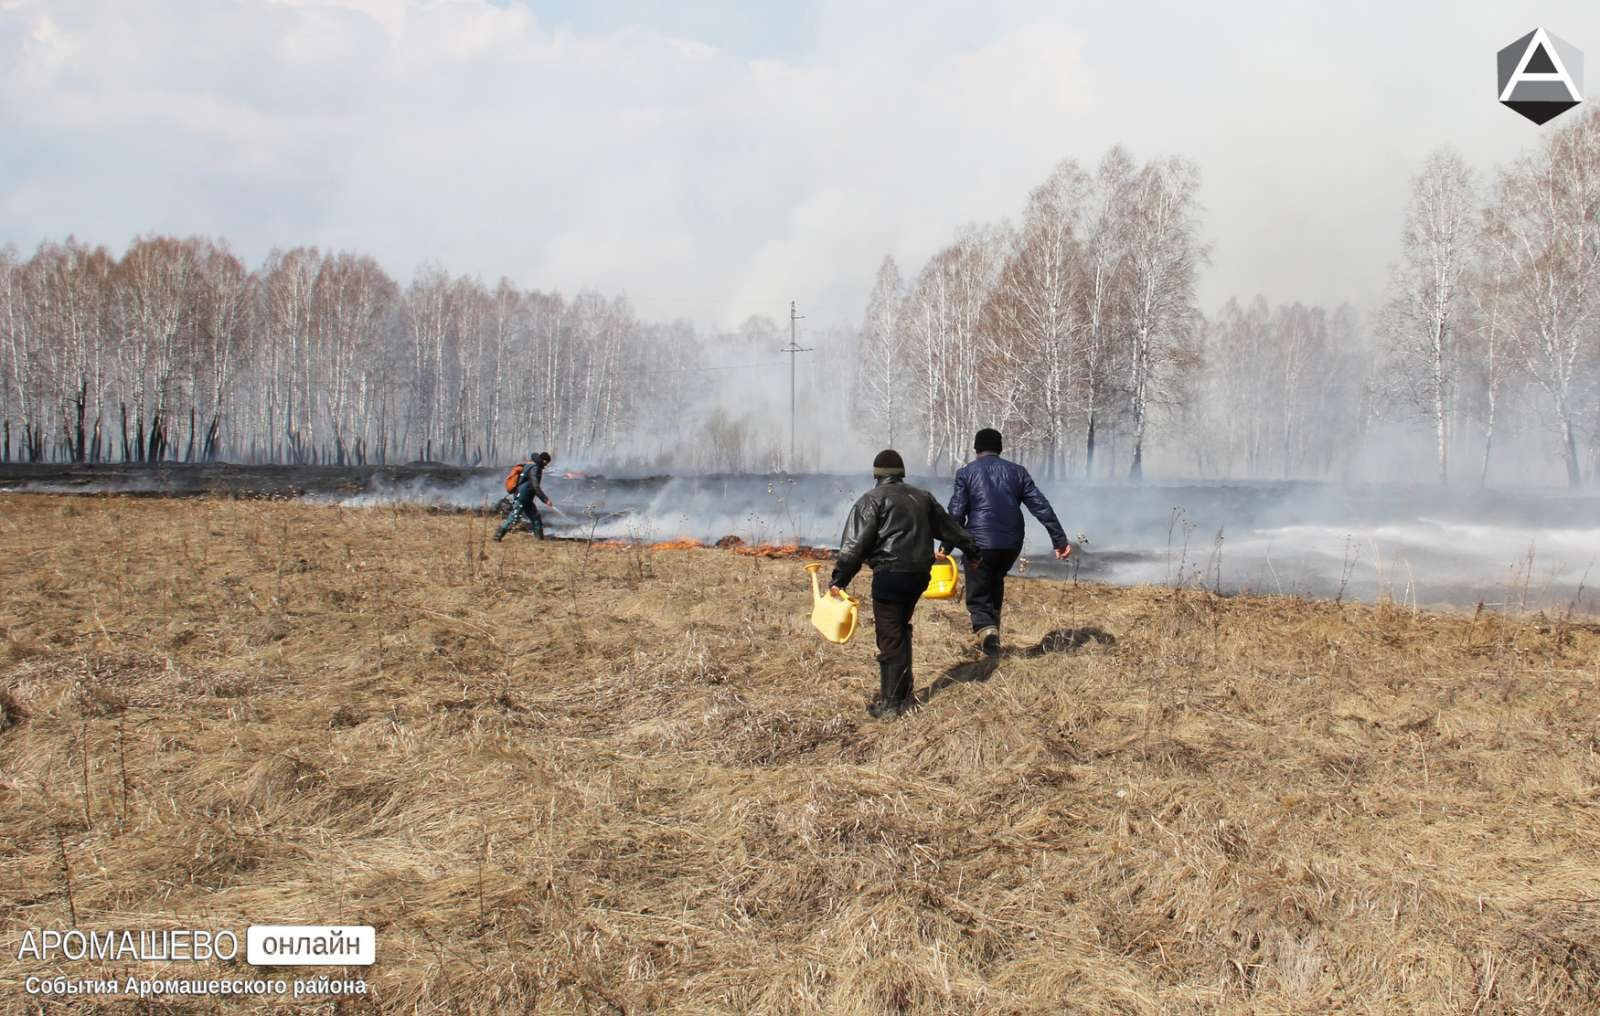 Власти просят местных жителей проявлять максимальную осторожность в обращении с огнем, не ходить в леса. Местные жители говорят, что огонь подбирается очень близко к деревням<br>